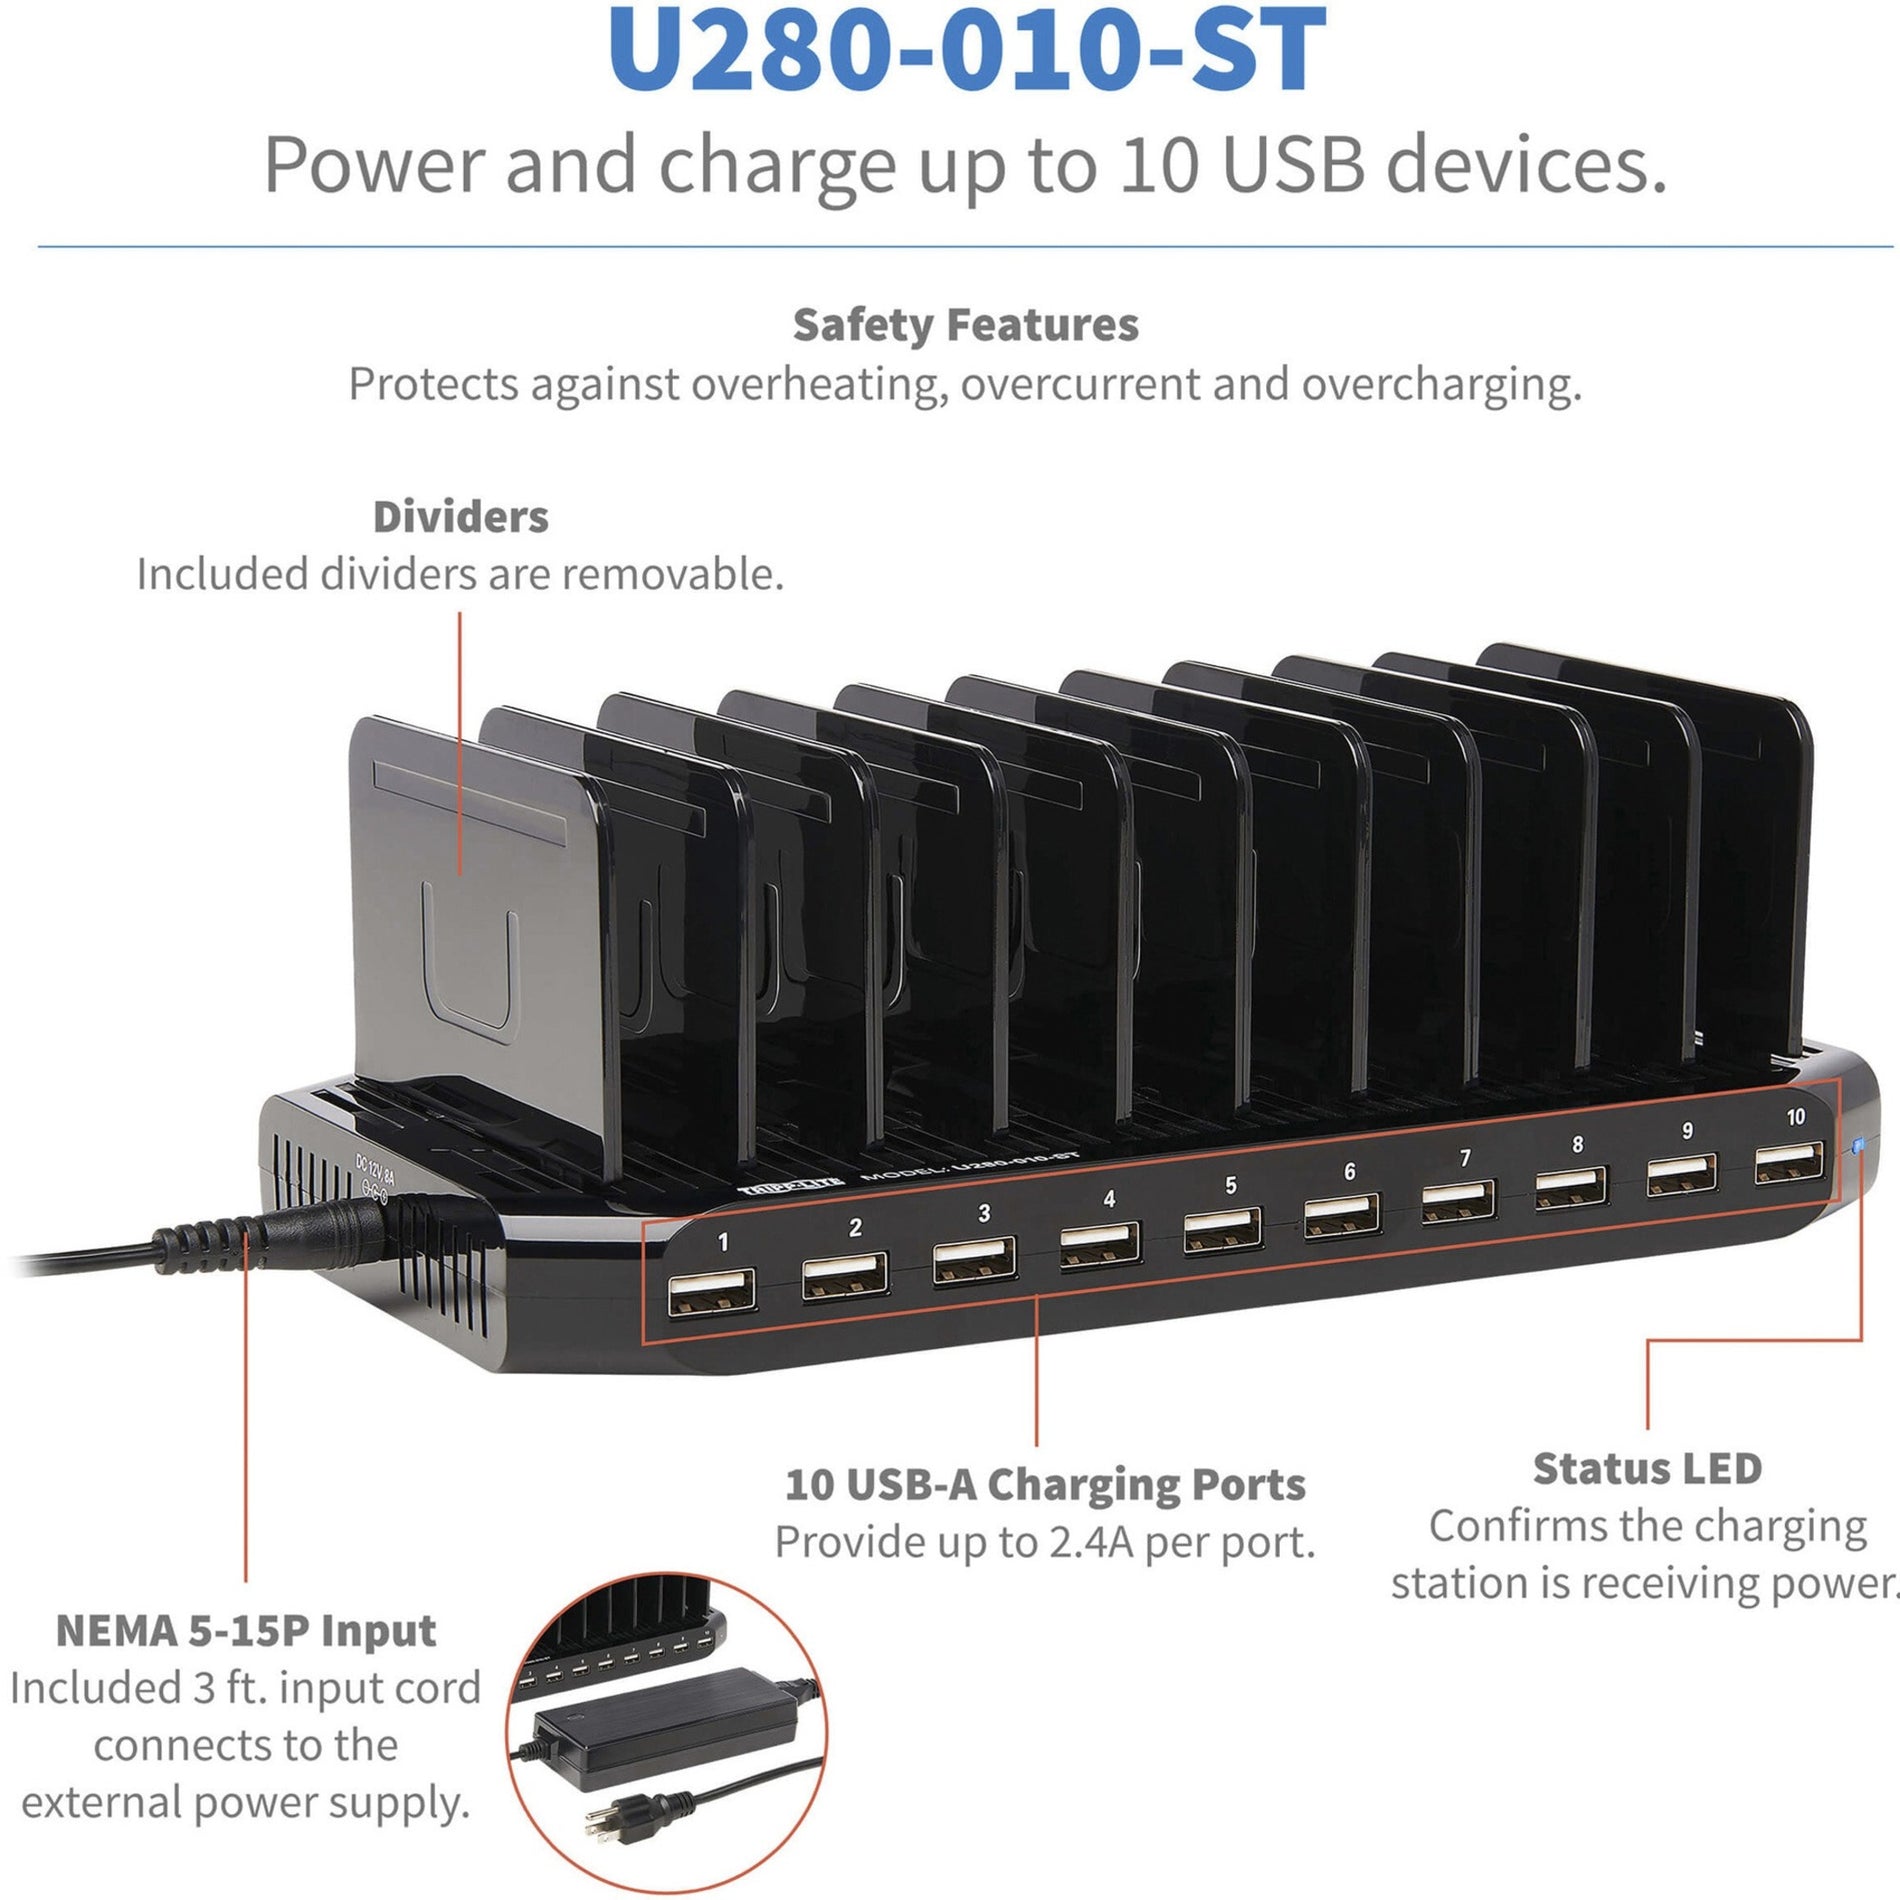 Tripp Lite U280-010-ST 10-Port USB Chargeur avec Stockage Intégré Charge Rapide pour iPad Smartphone Tablette Notebook